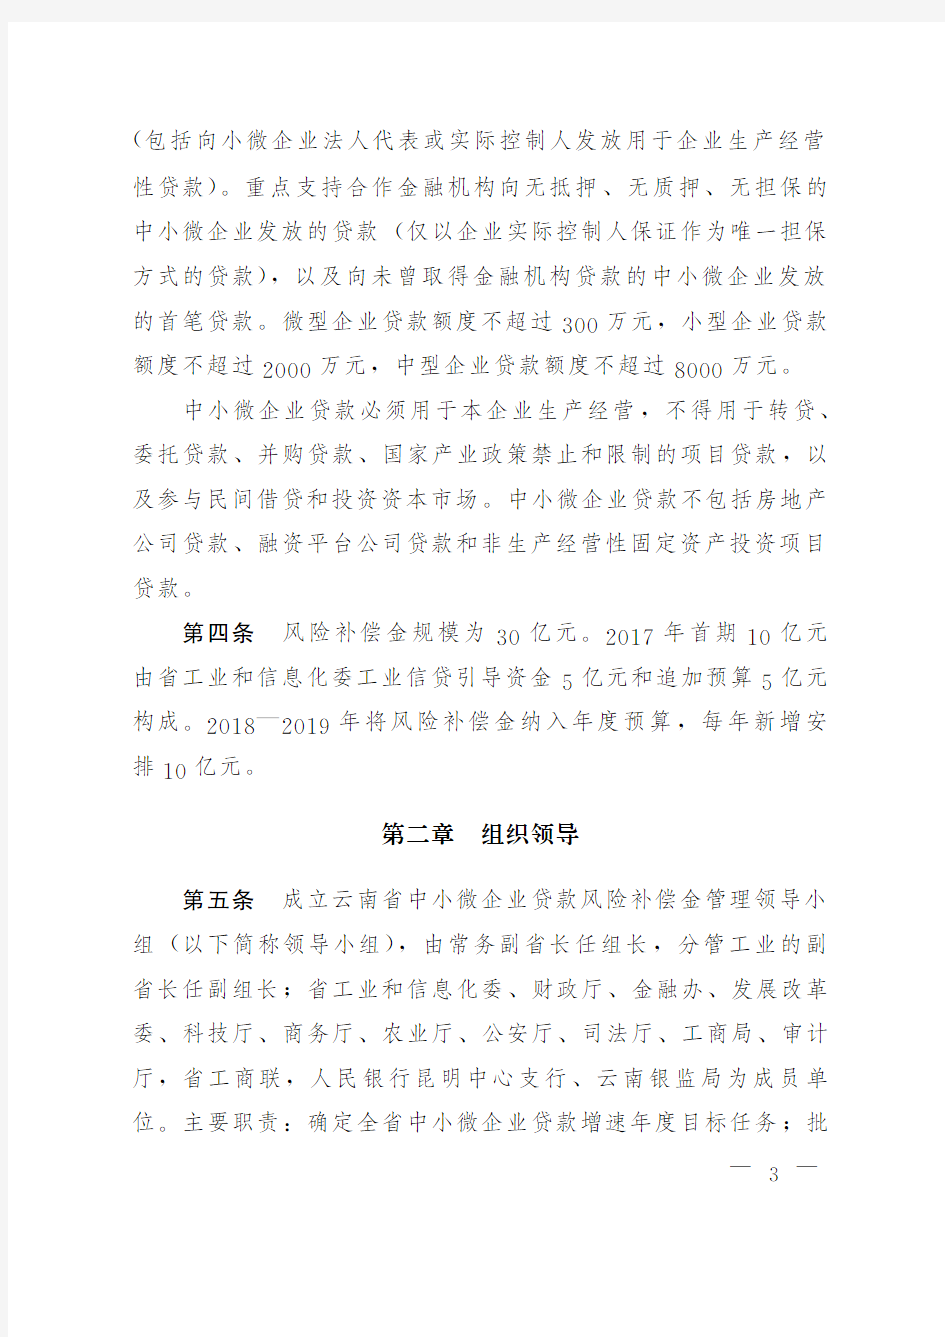 云南省中小微企业贷款风险补偿资金管理办法(试行)